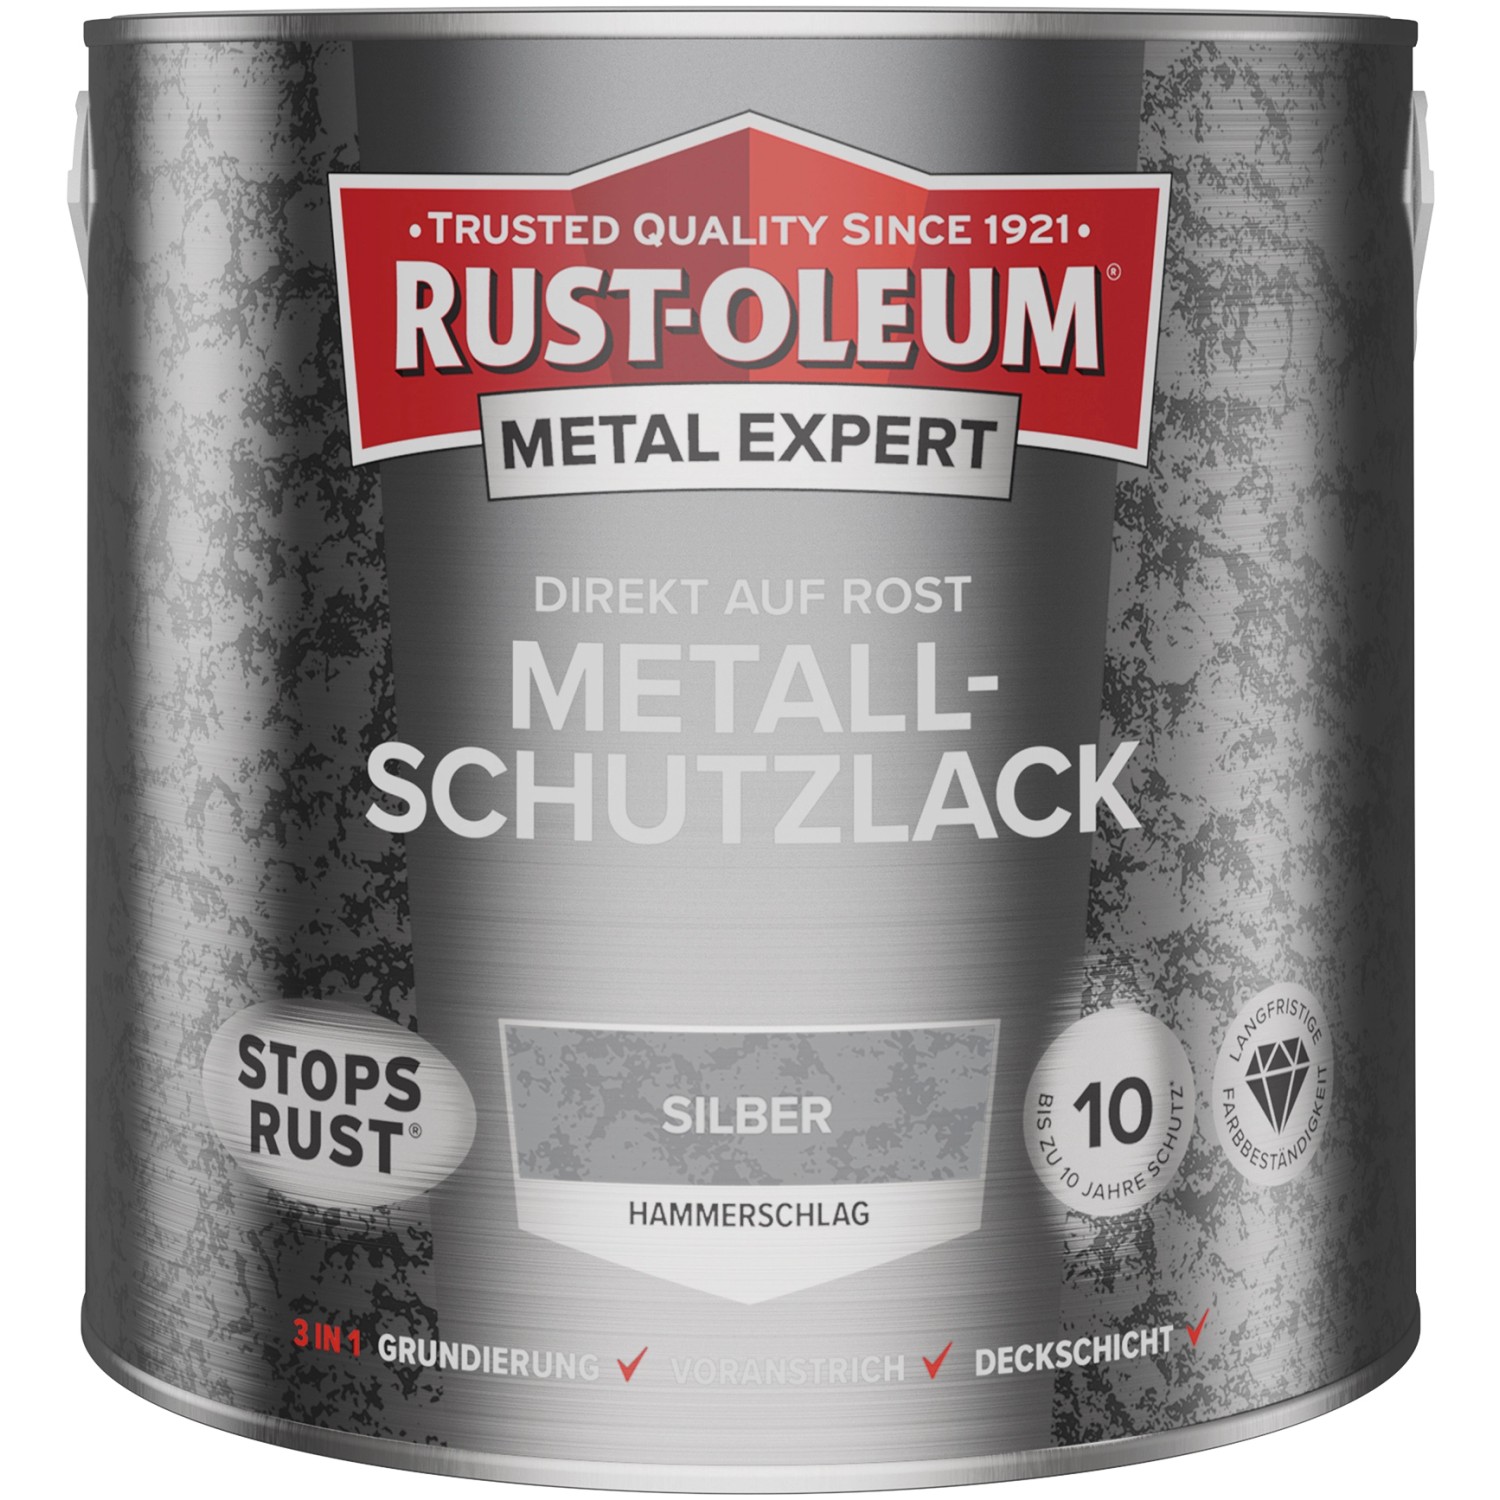 Rust-Oleum Metal Expert Hammerschlag Silber 2,5 l von Rust-Oleum